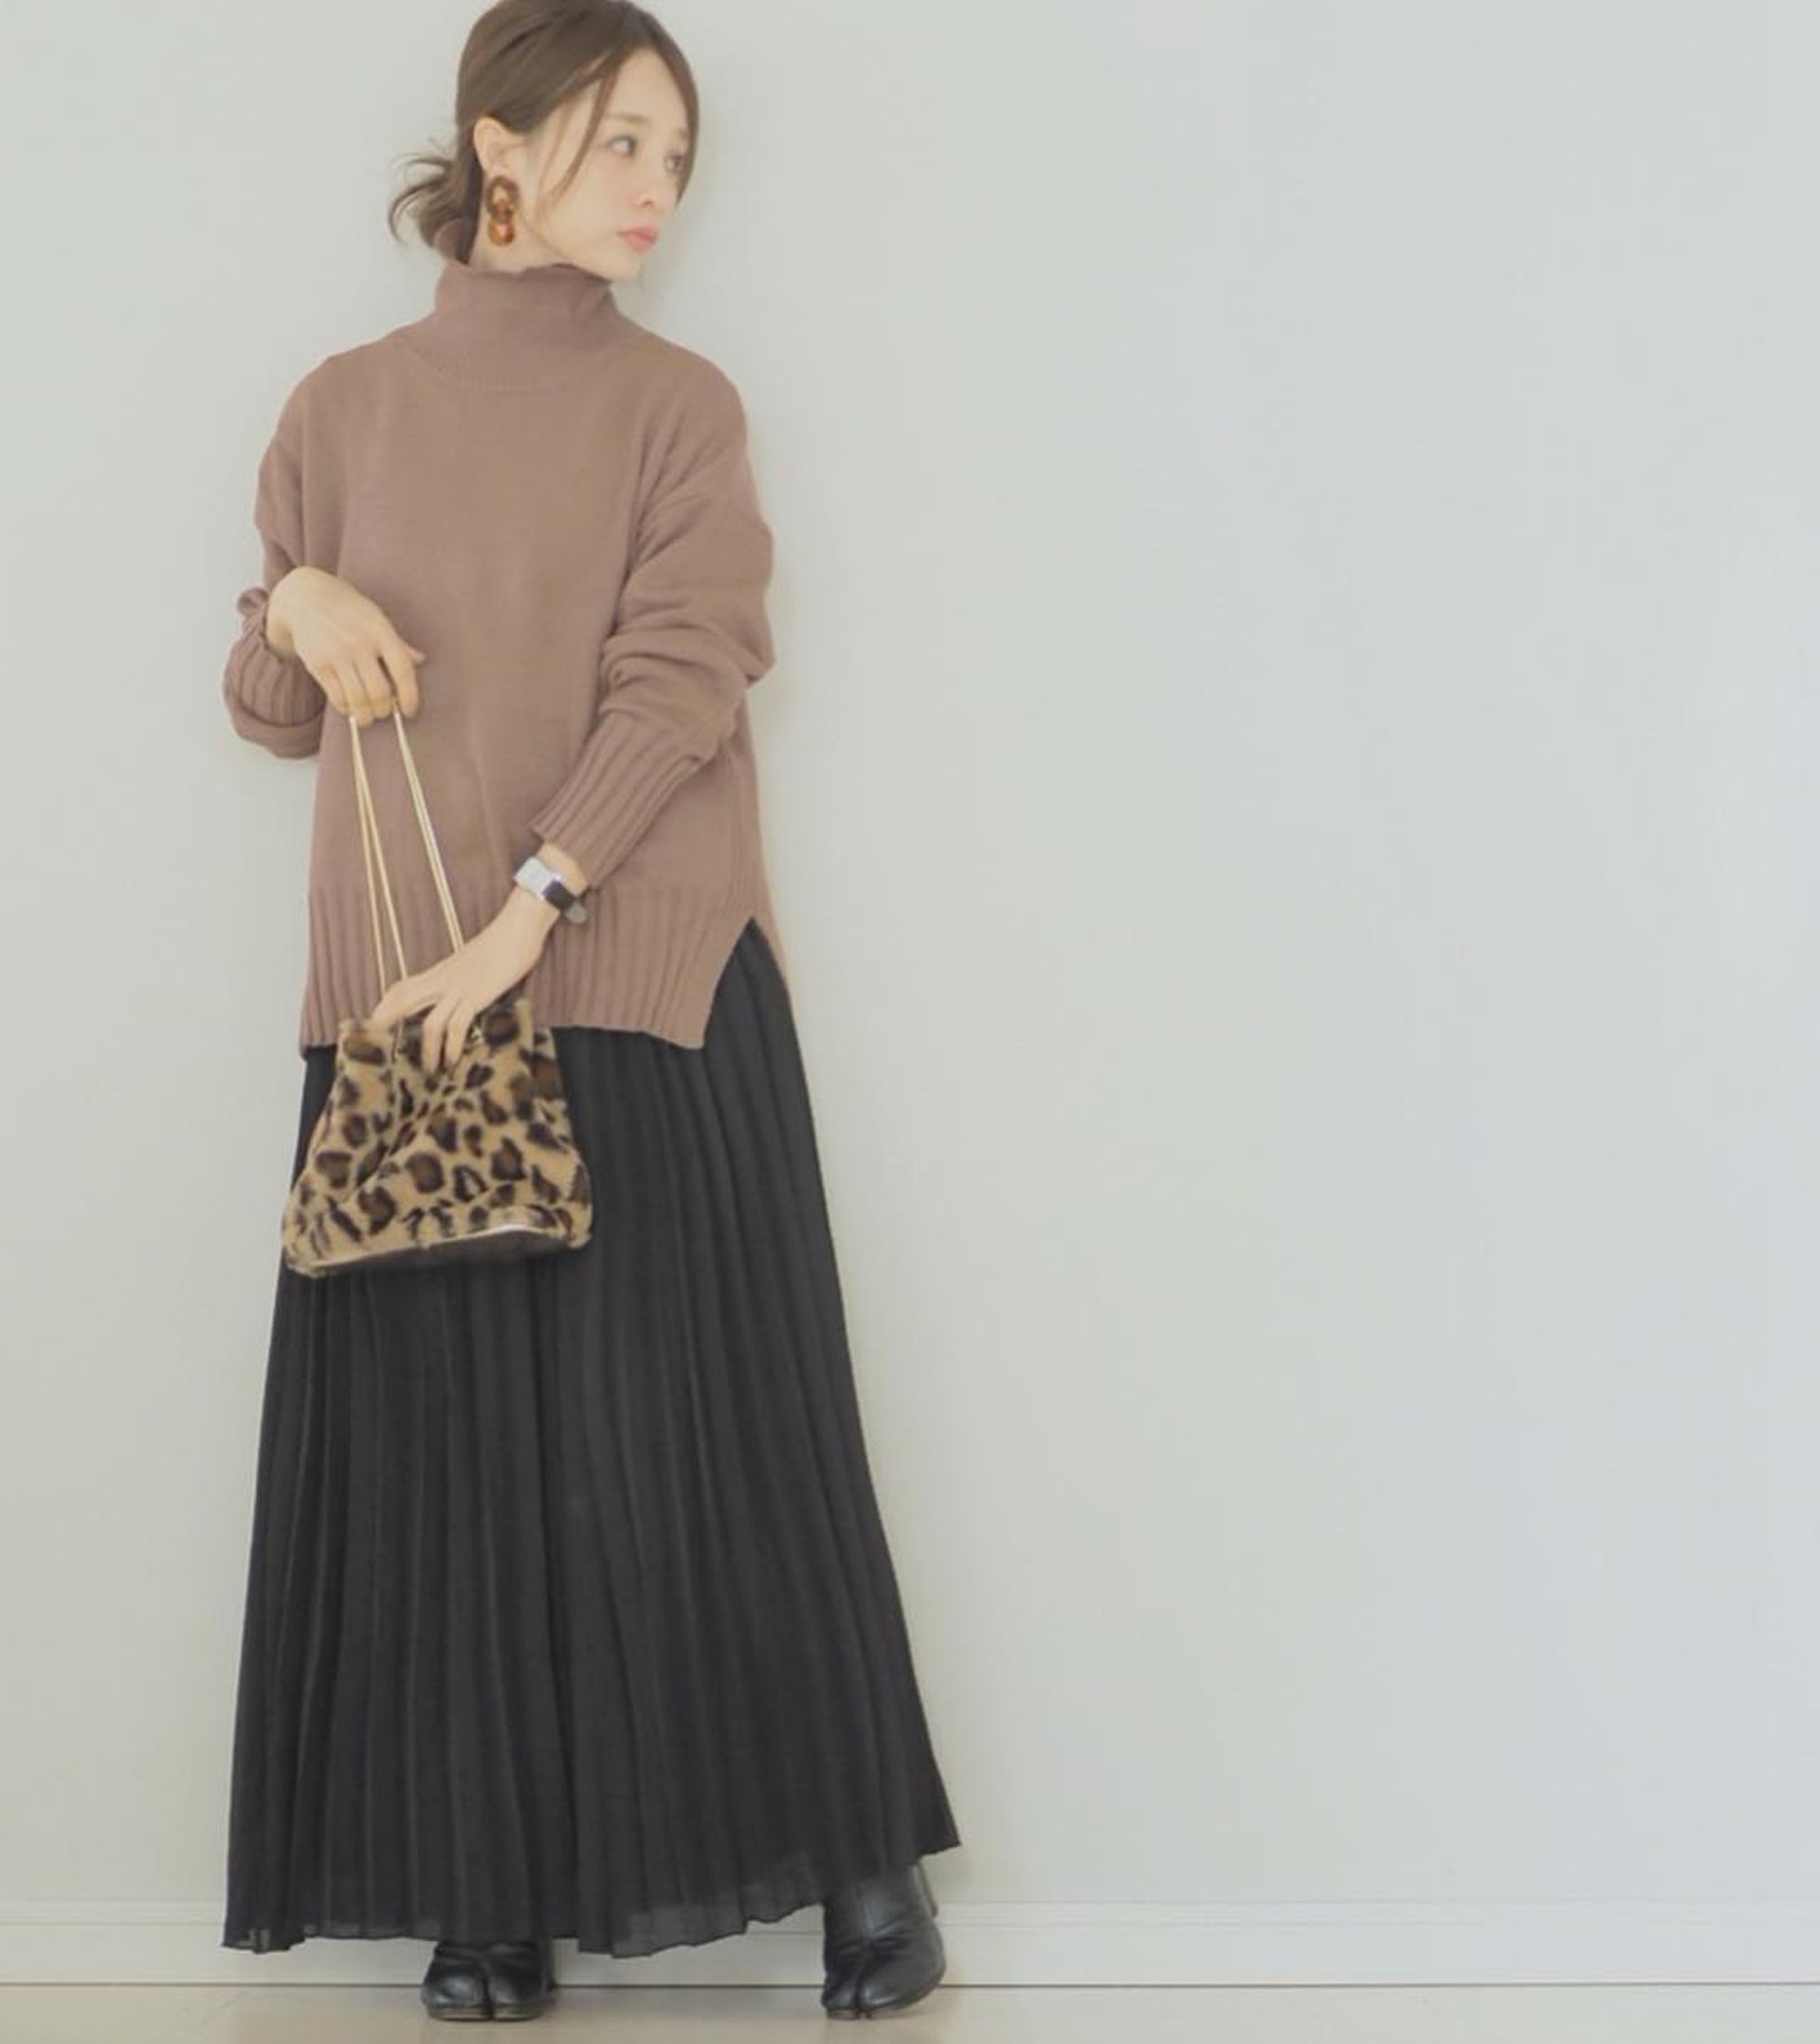 百褶裙是拉長身形很好的垂墜單品。(akiico@IG)